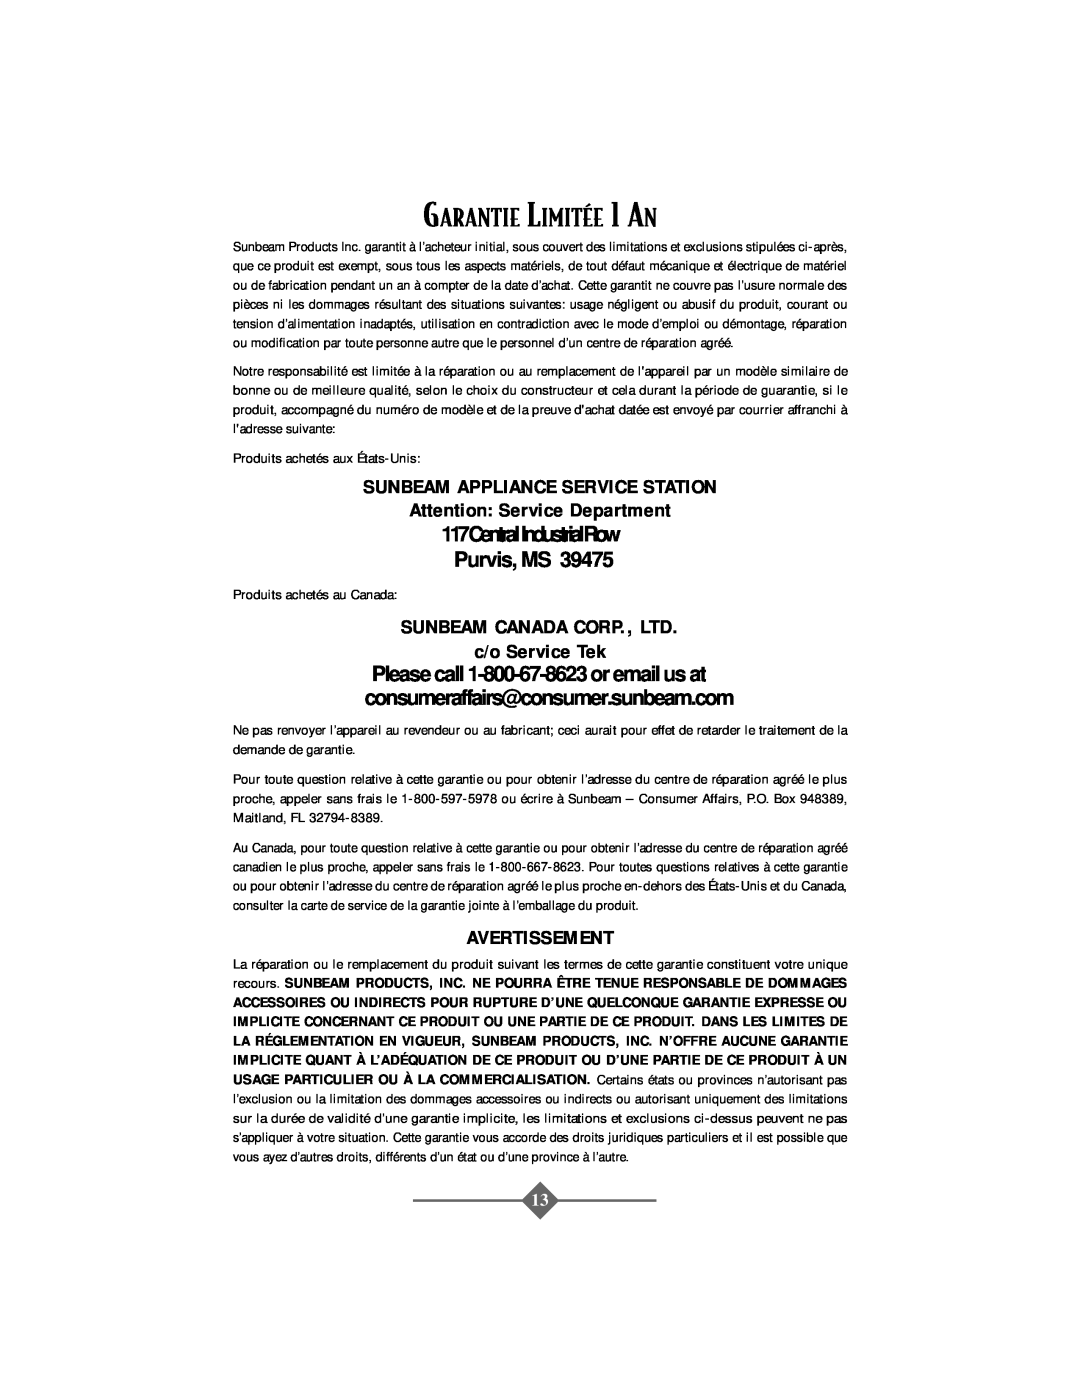 Oster 2506 instruction manual GARANTIE LIMITƒE 1 AN, 117CentralIndustrialRow Purvis, MS, Avertissement, c/o Service Tek 